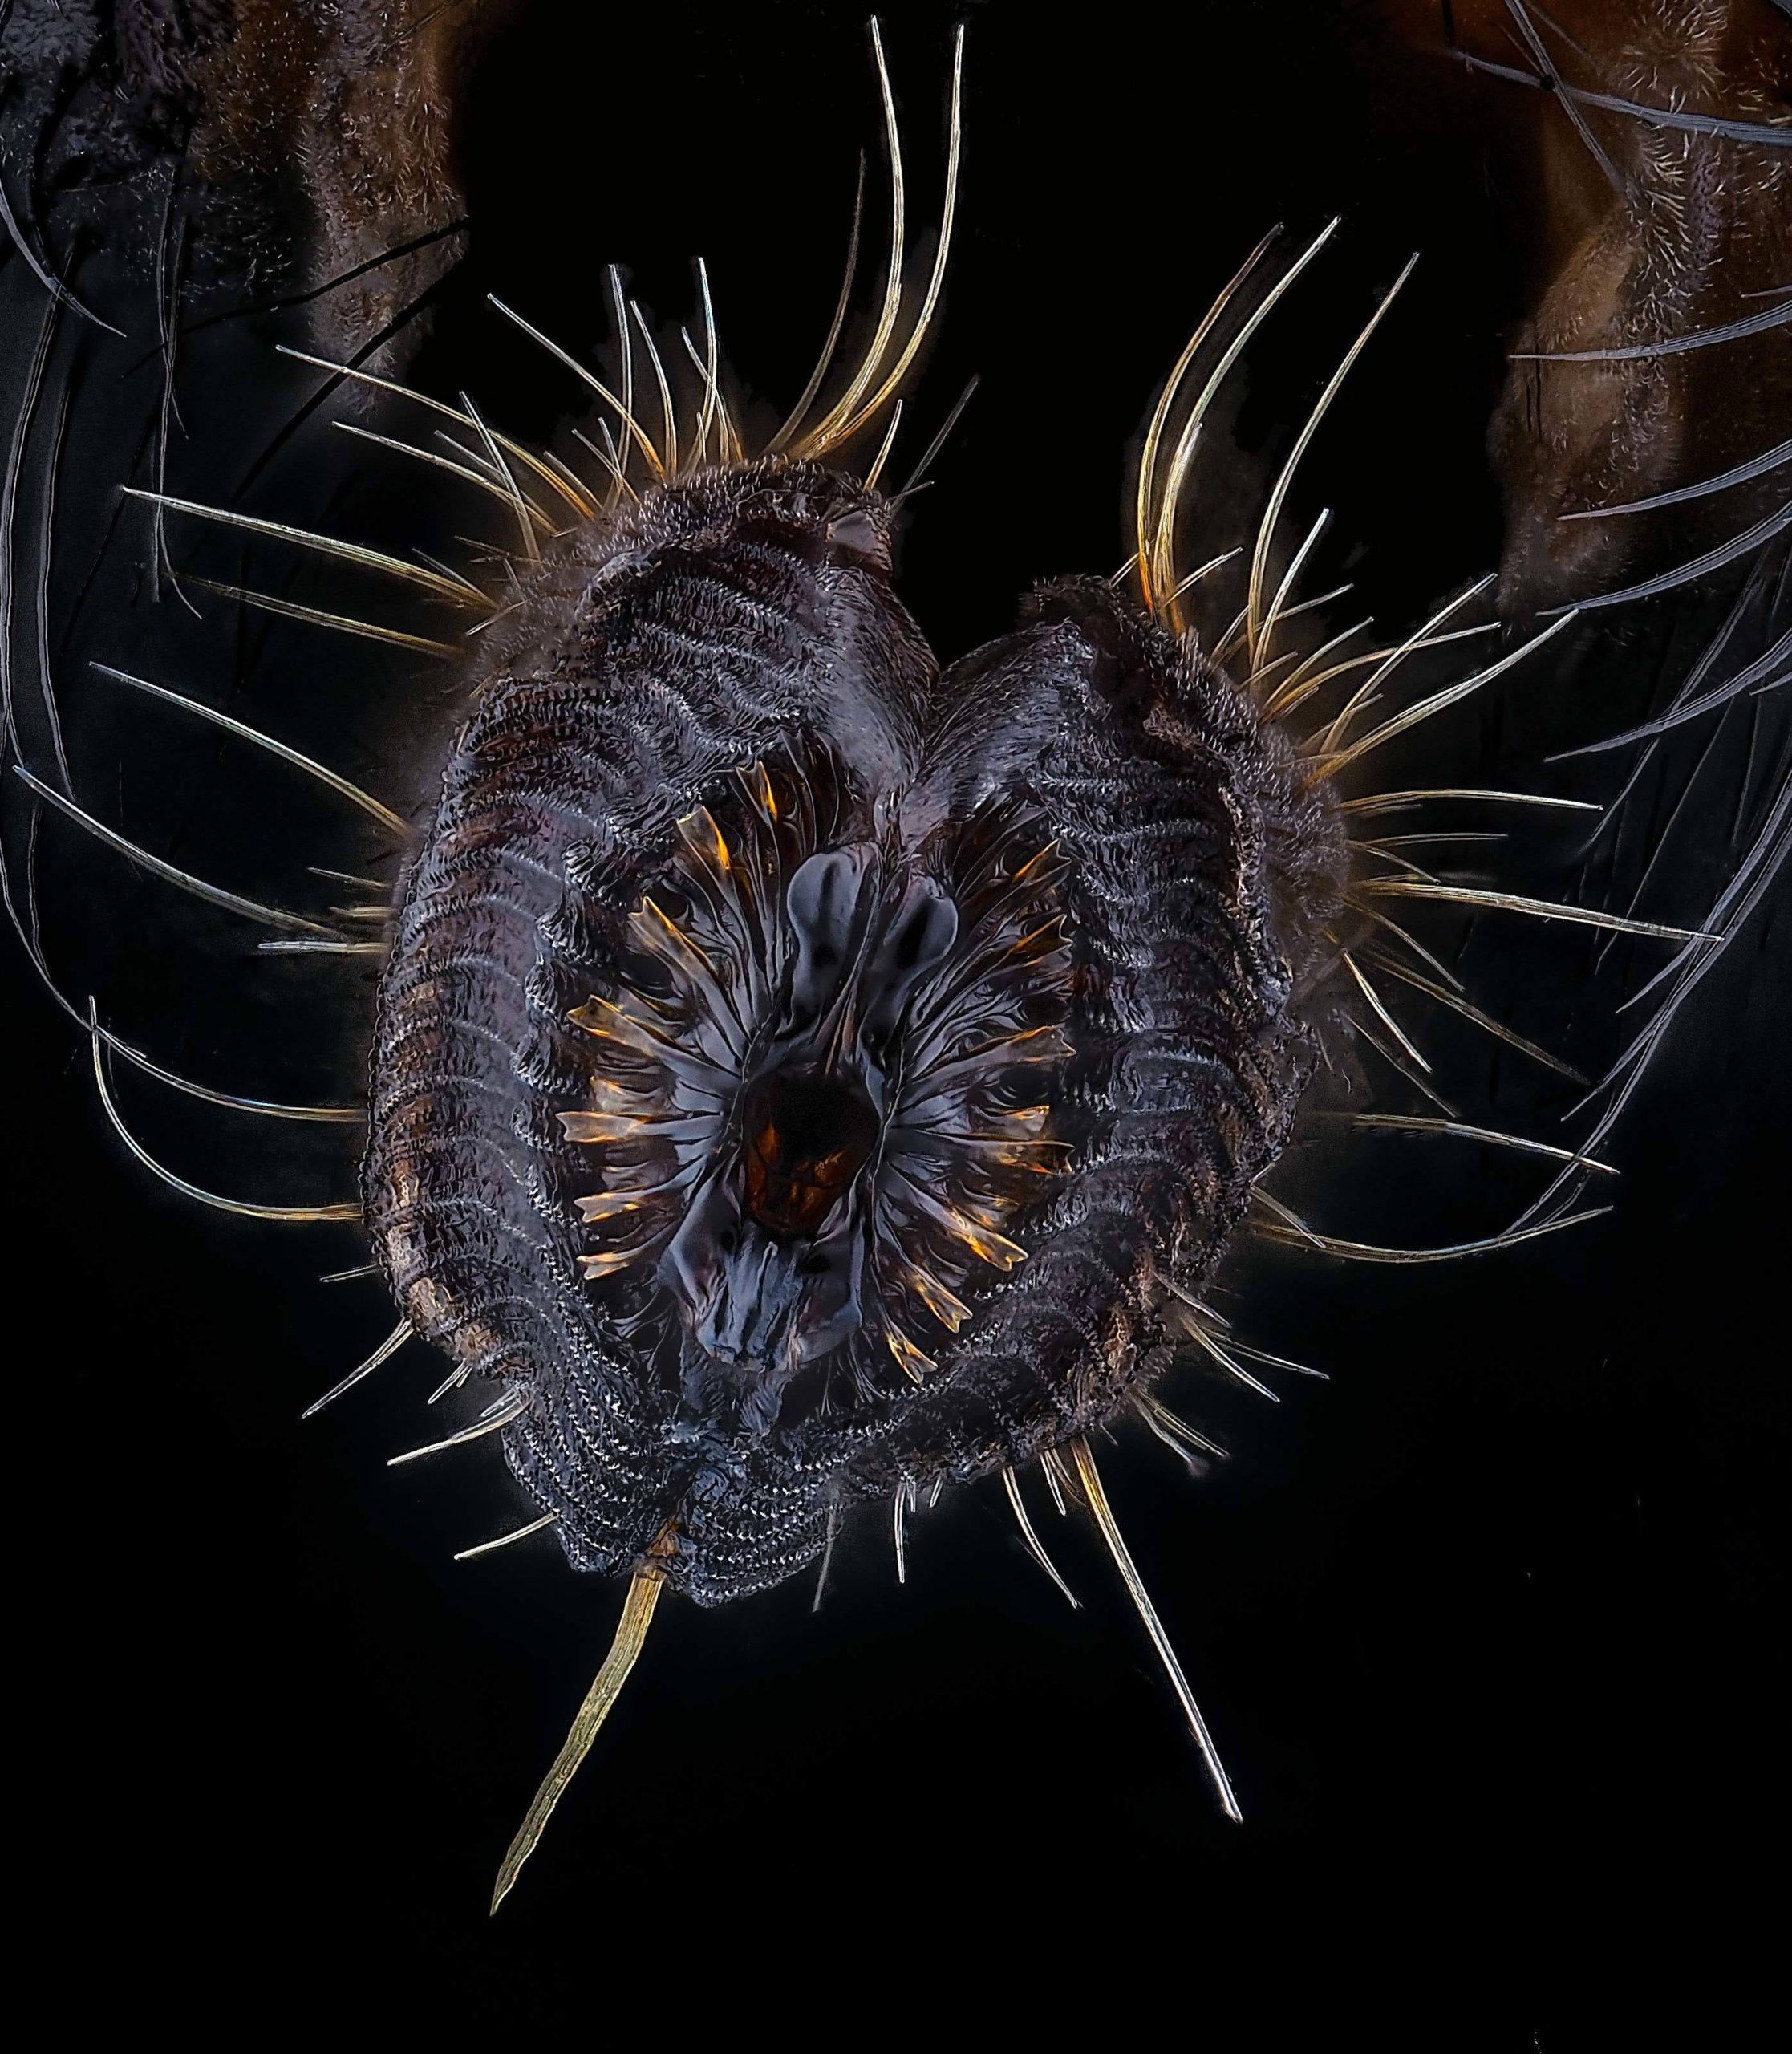 Proboscis of a housefly. (Image: Oliver Dum)